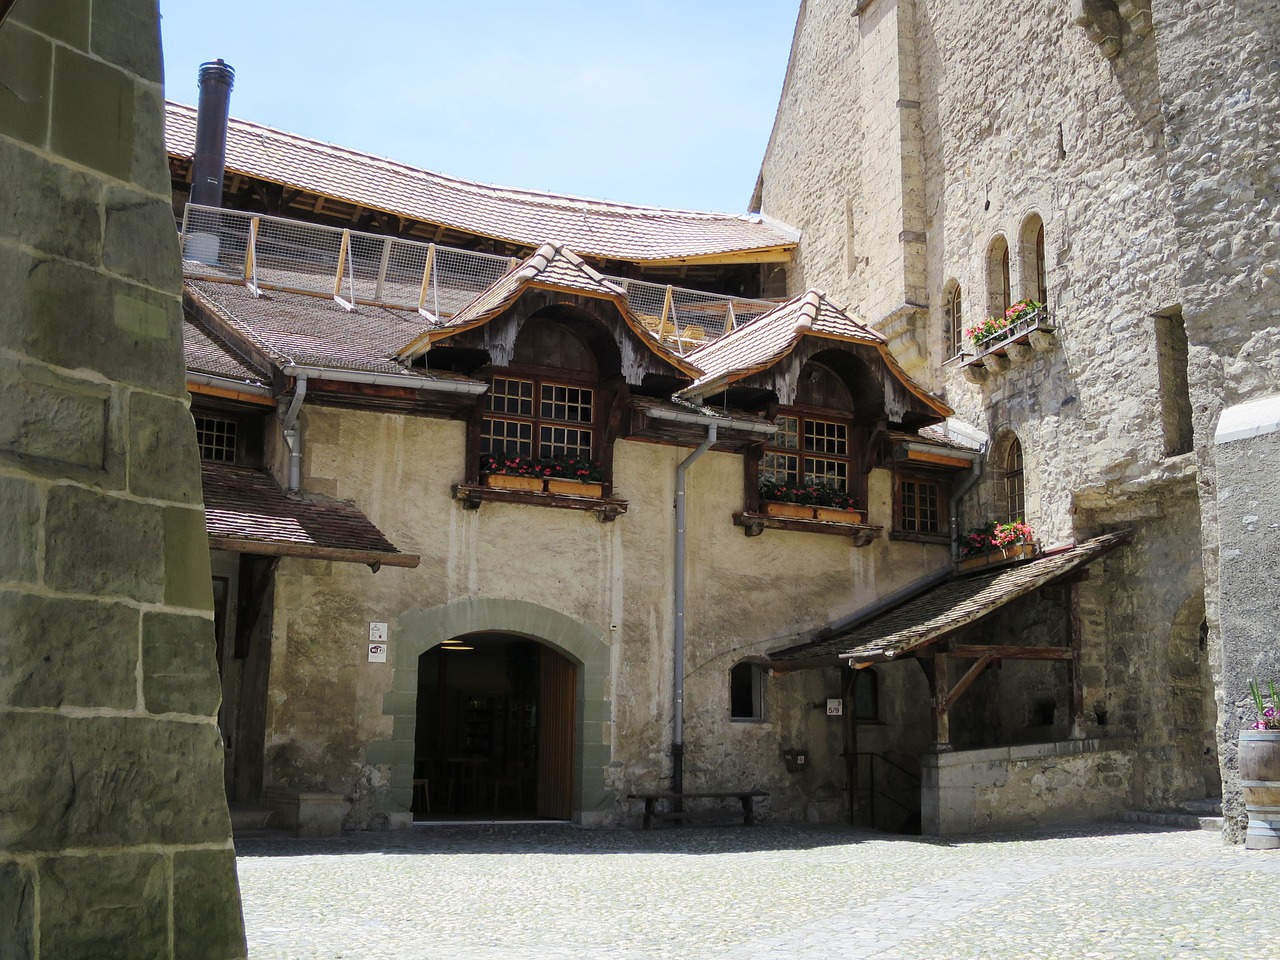 château chillon montreux switzerland free photo